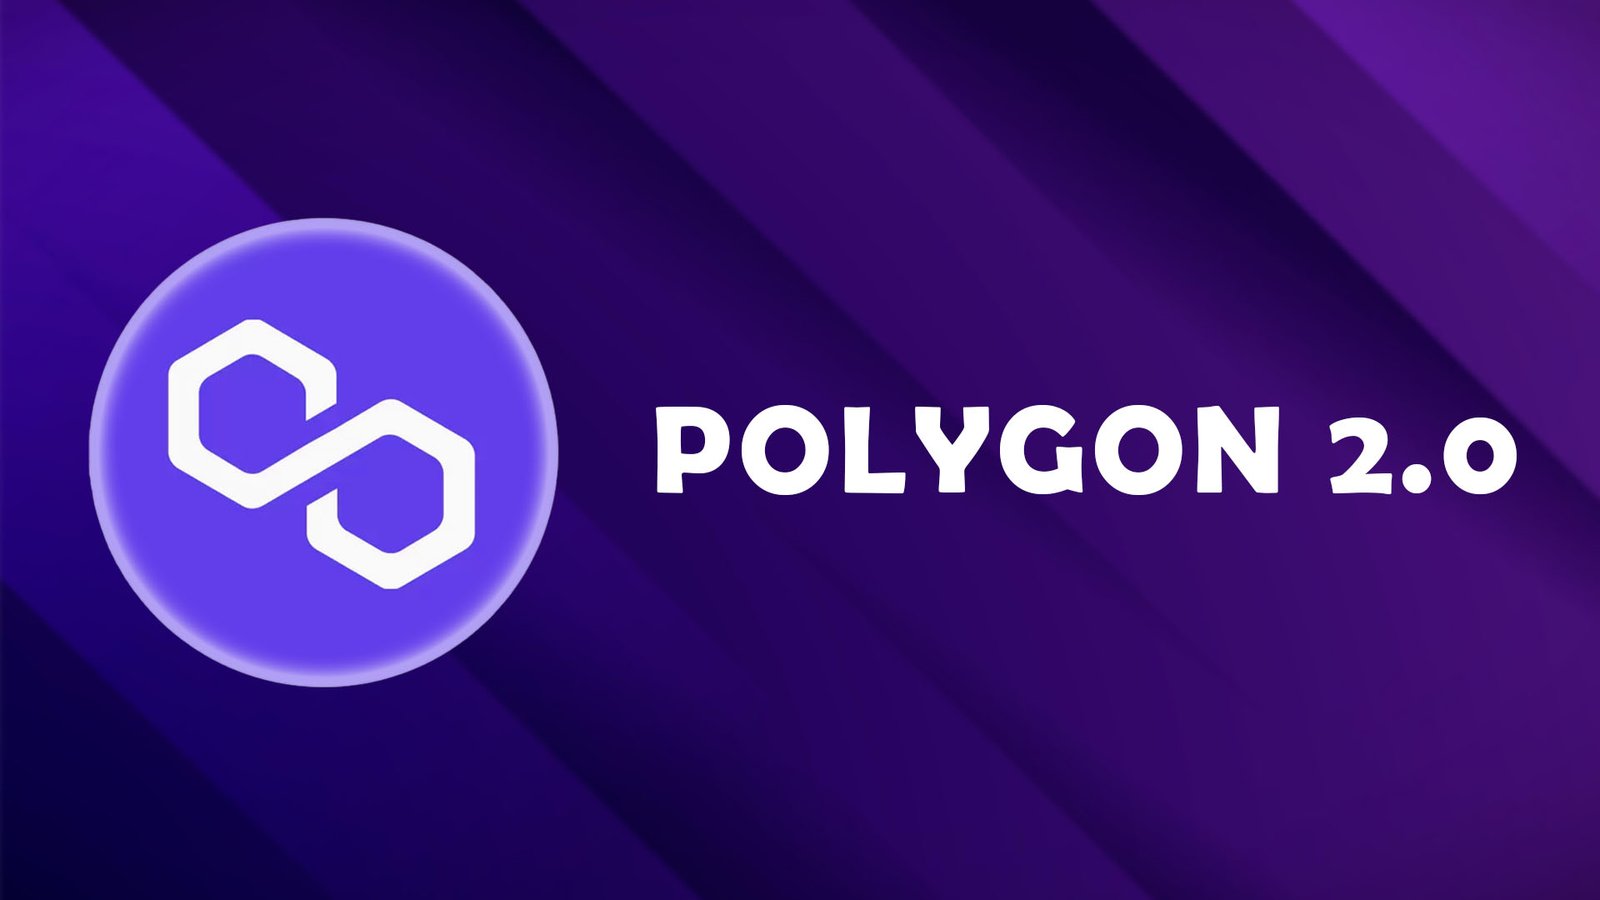 Polygon 2.0 news